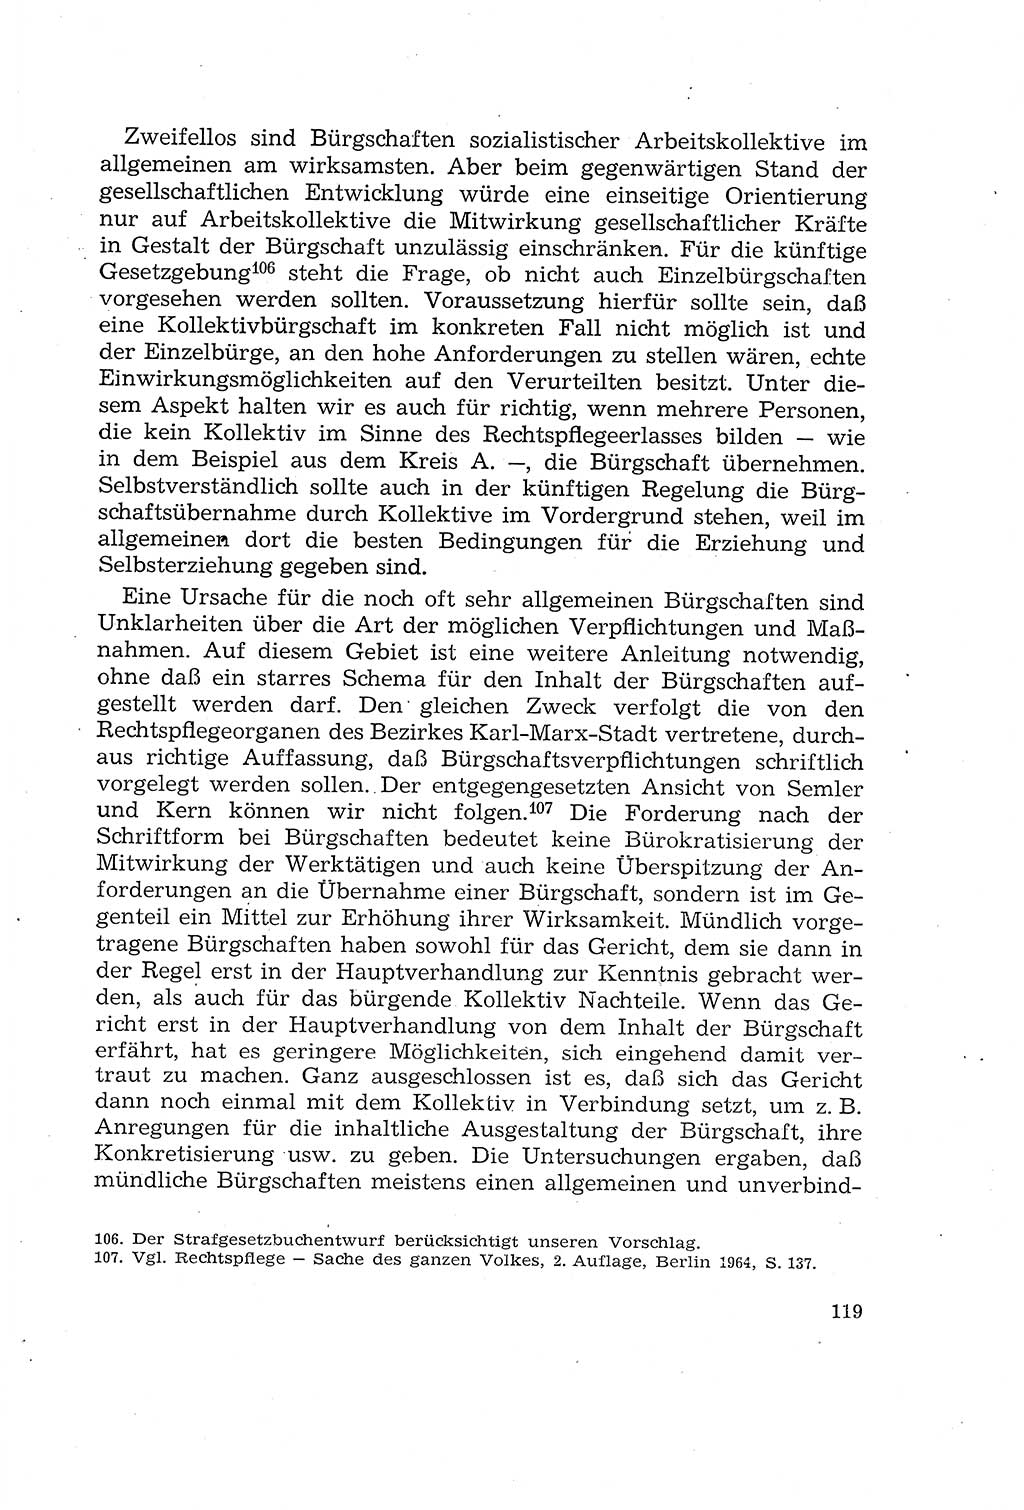 Die Mitwirkung der Werktätigen am Strafverfahren [Deutsche Demokratische Republik (DDR)] 1966, Seite 119 (Mitw. Str.-Verf. DDR 1966, S. 119)